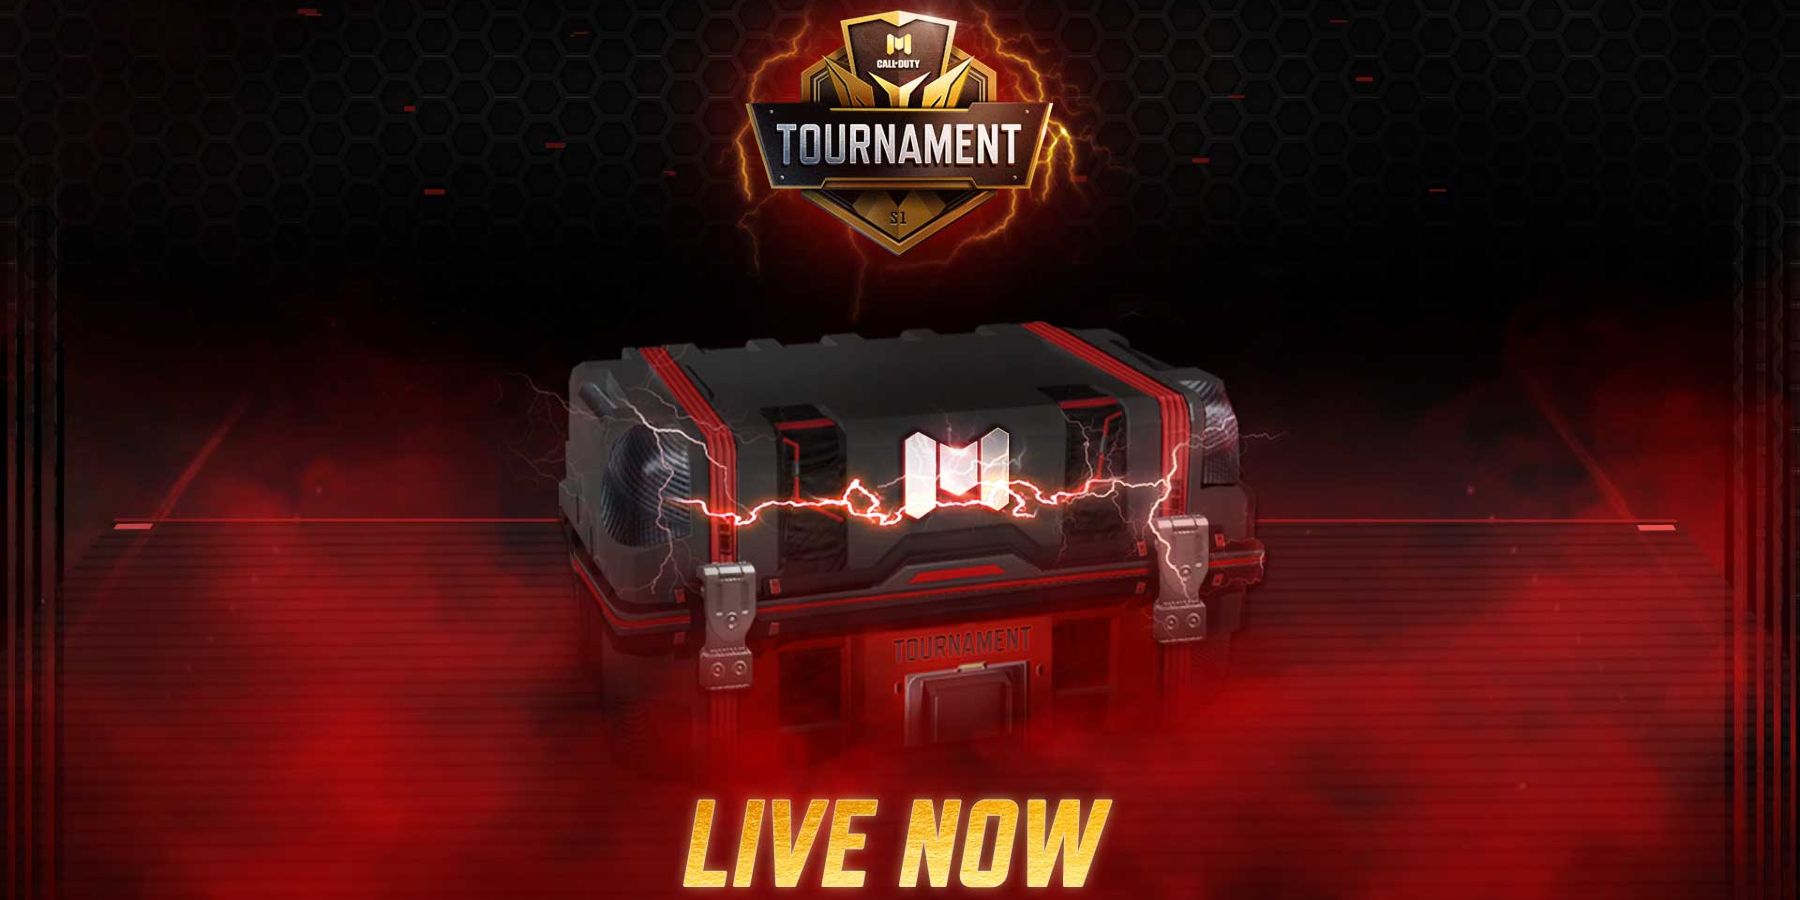 tournament mode rewards live now